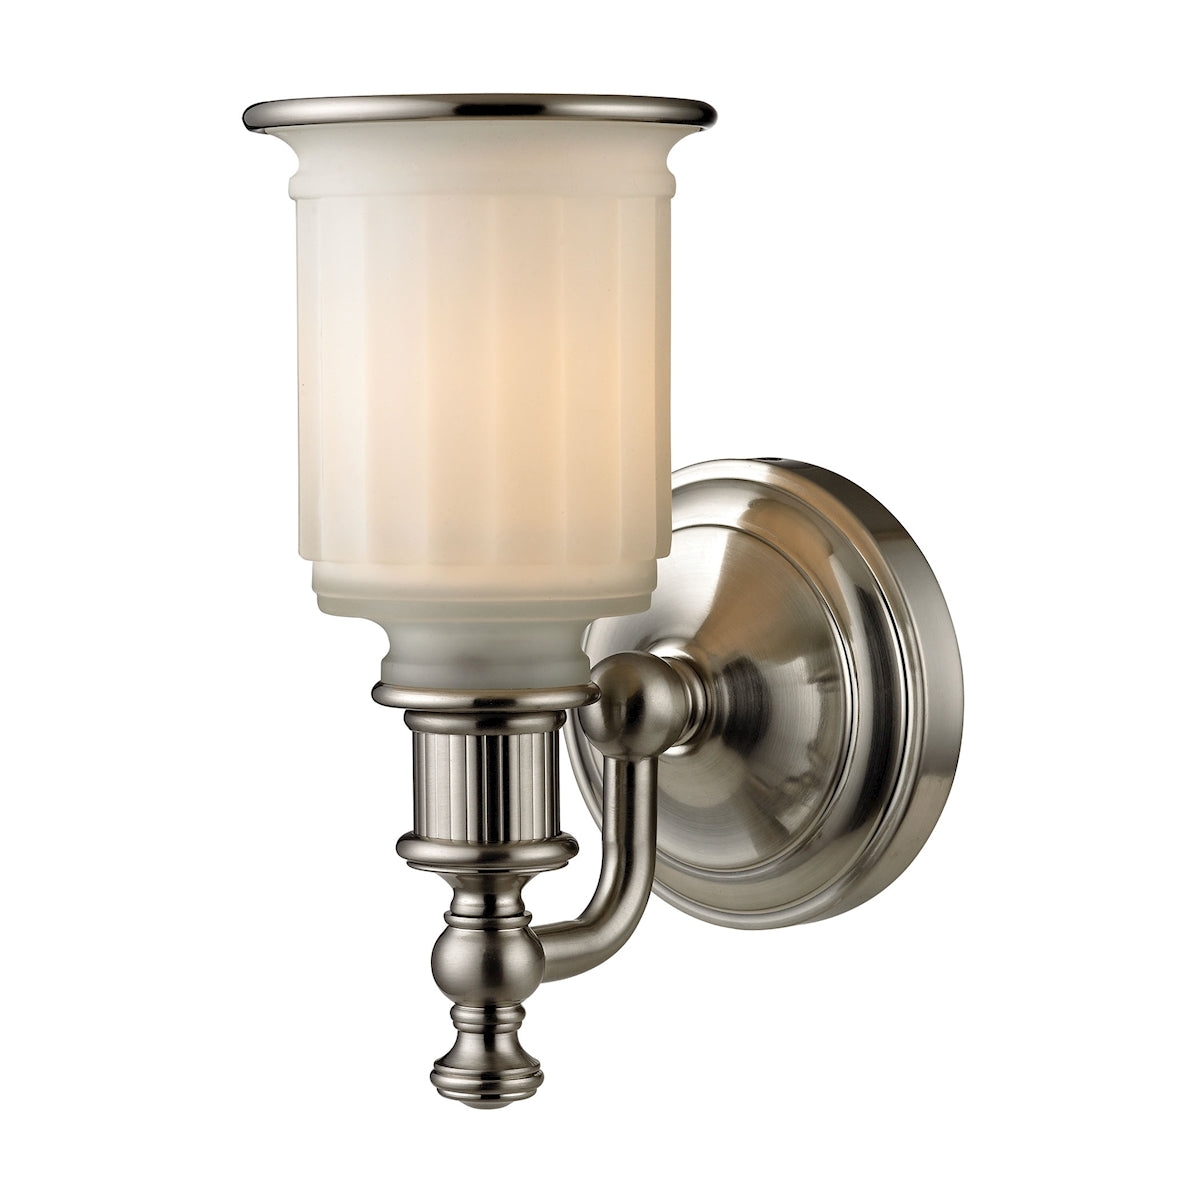 ELK Lighting 52000/1 Acadia 1-Light Vanity Lamp in Brushed Nickel with Opal Reeded Pressed Glass